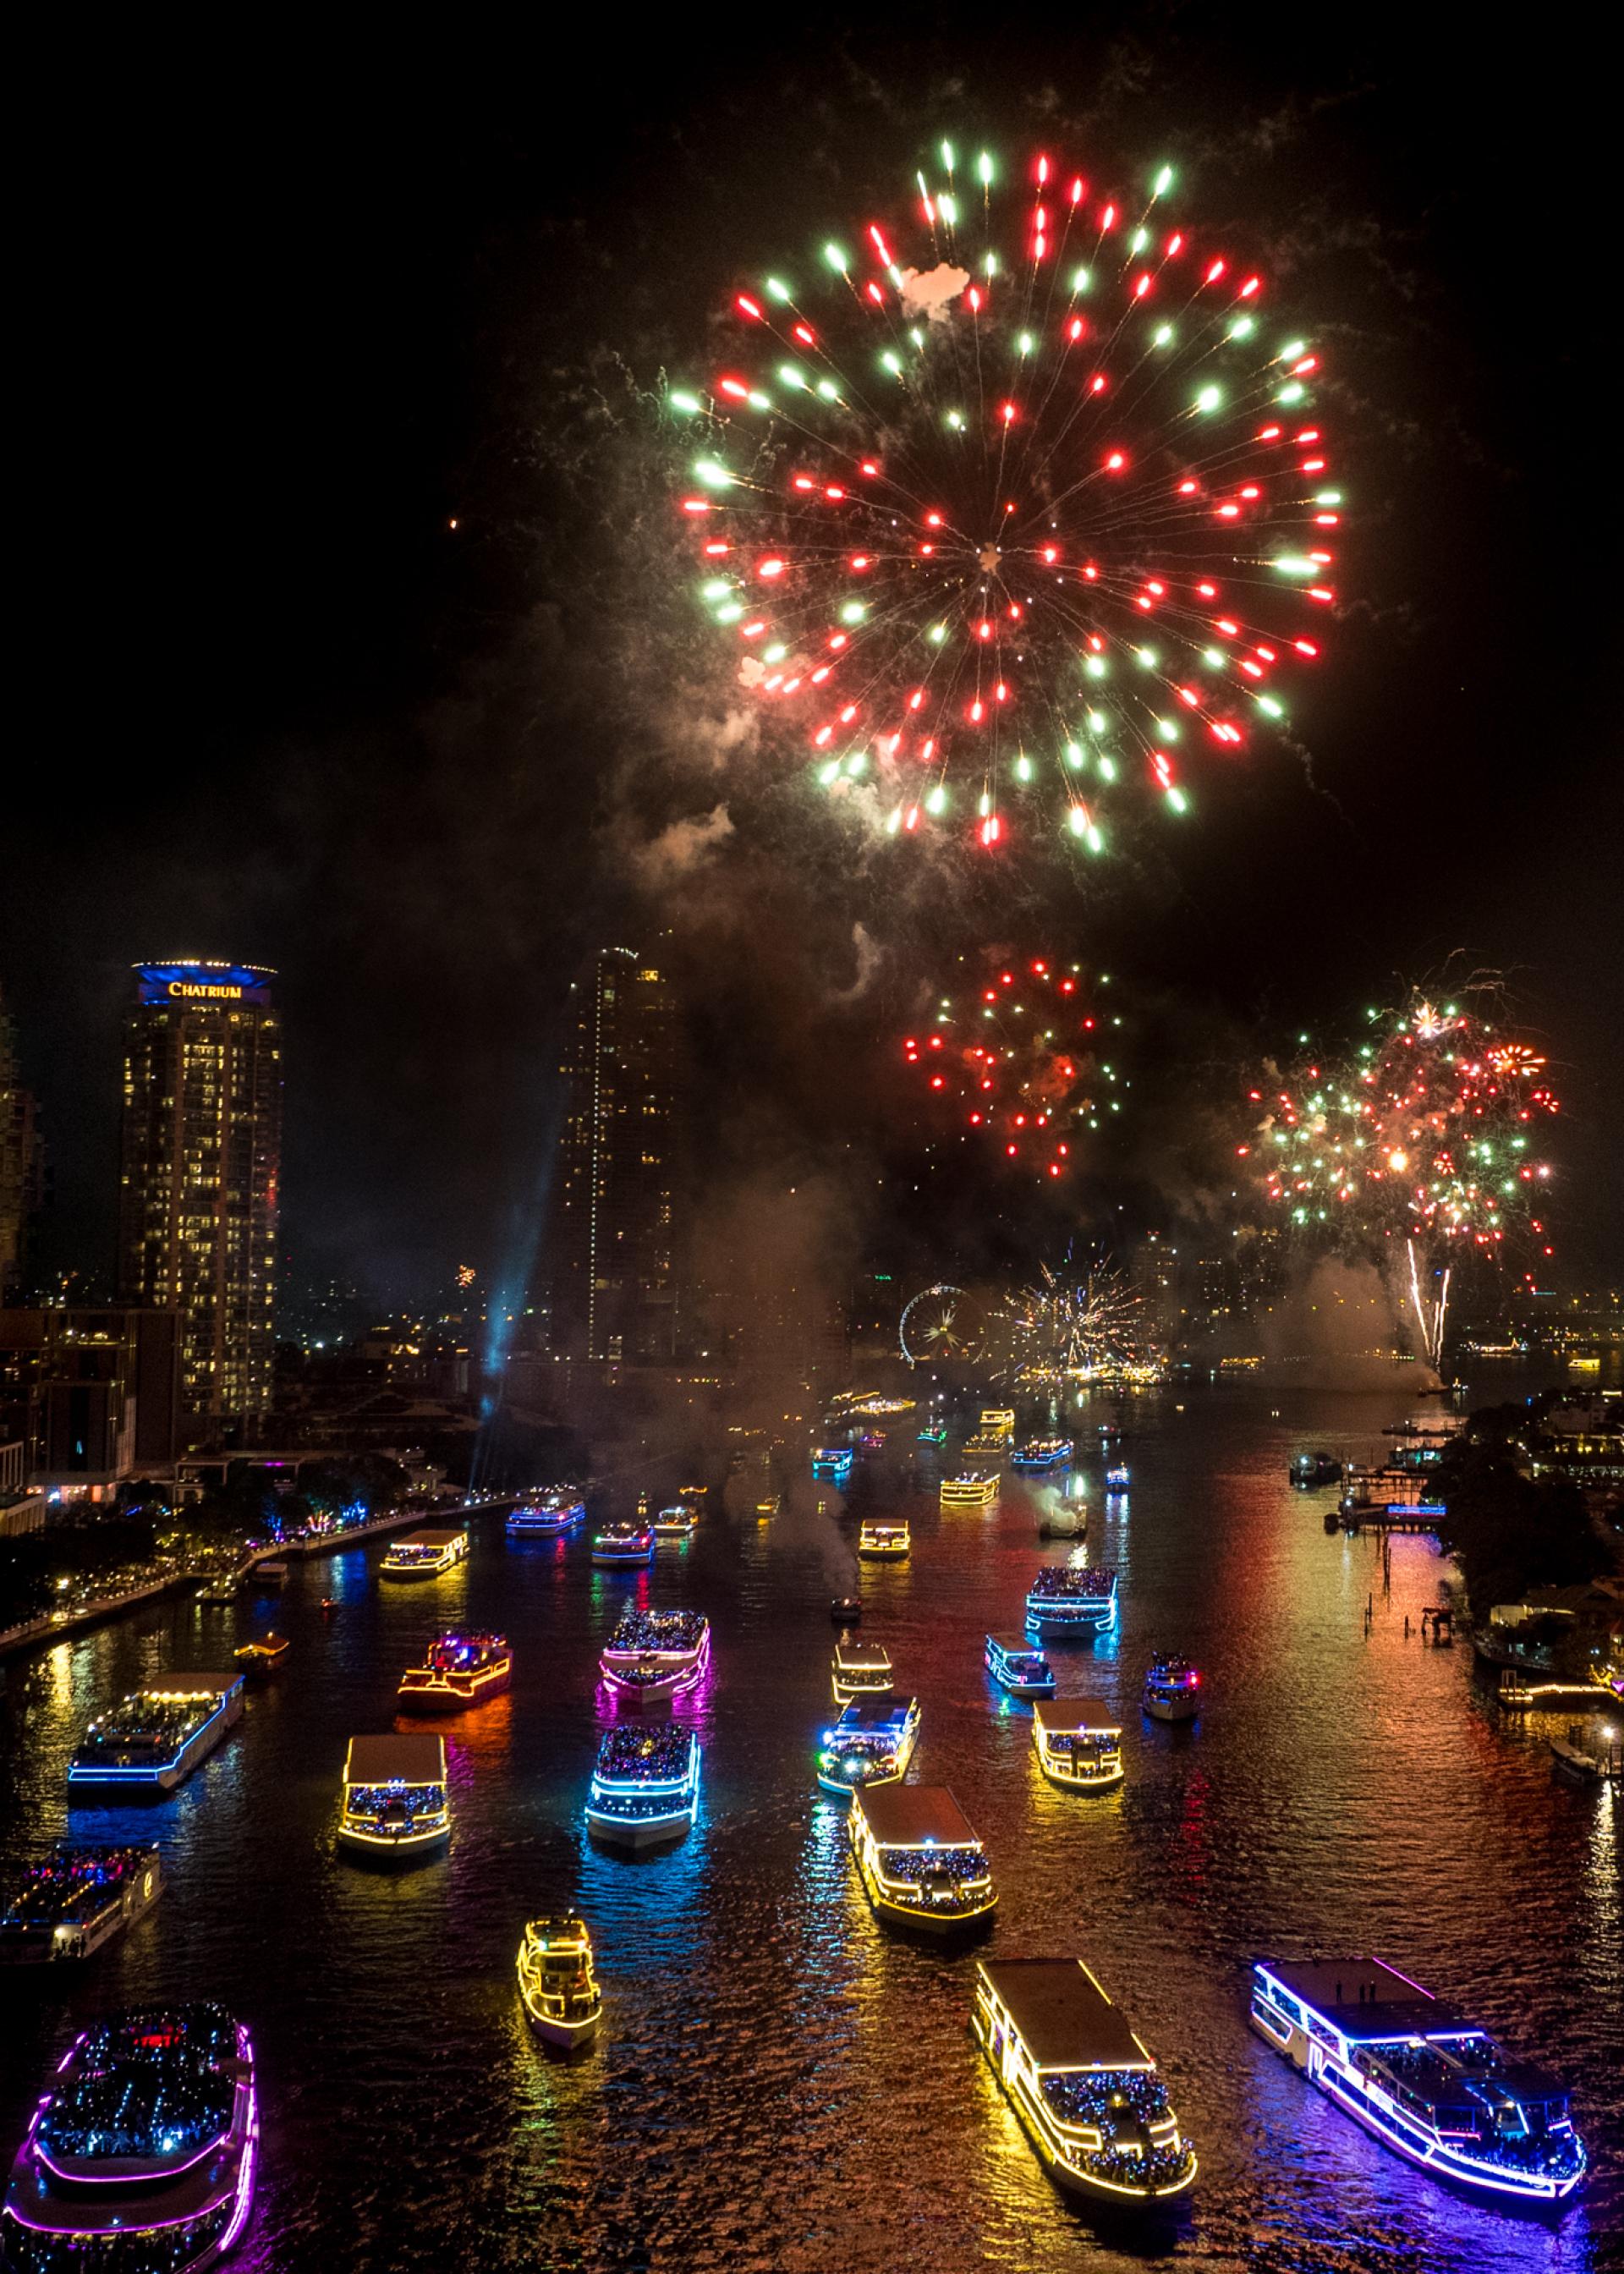 London Photography Awards Winner - Bursts of Joy: New Year’s on the Chao Phraya, Bangkok